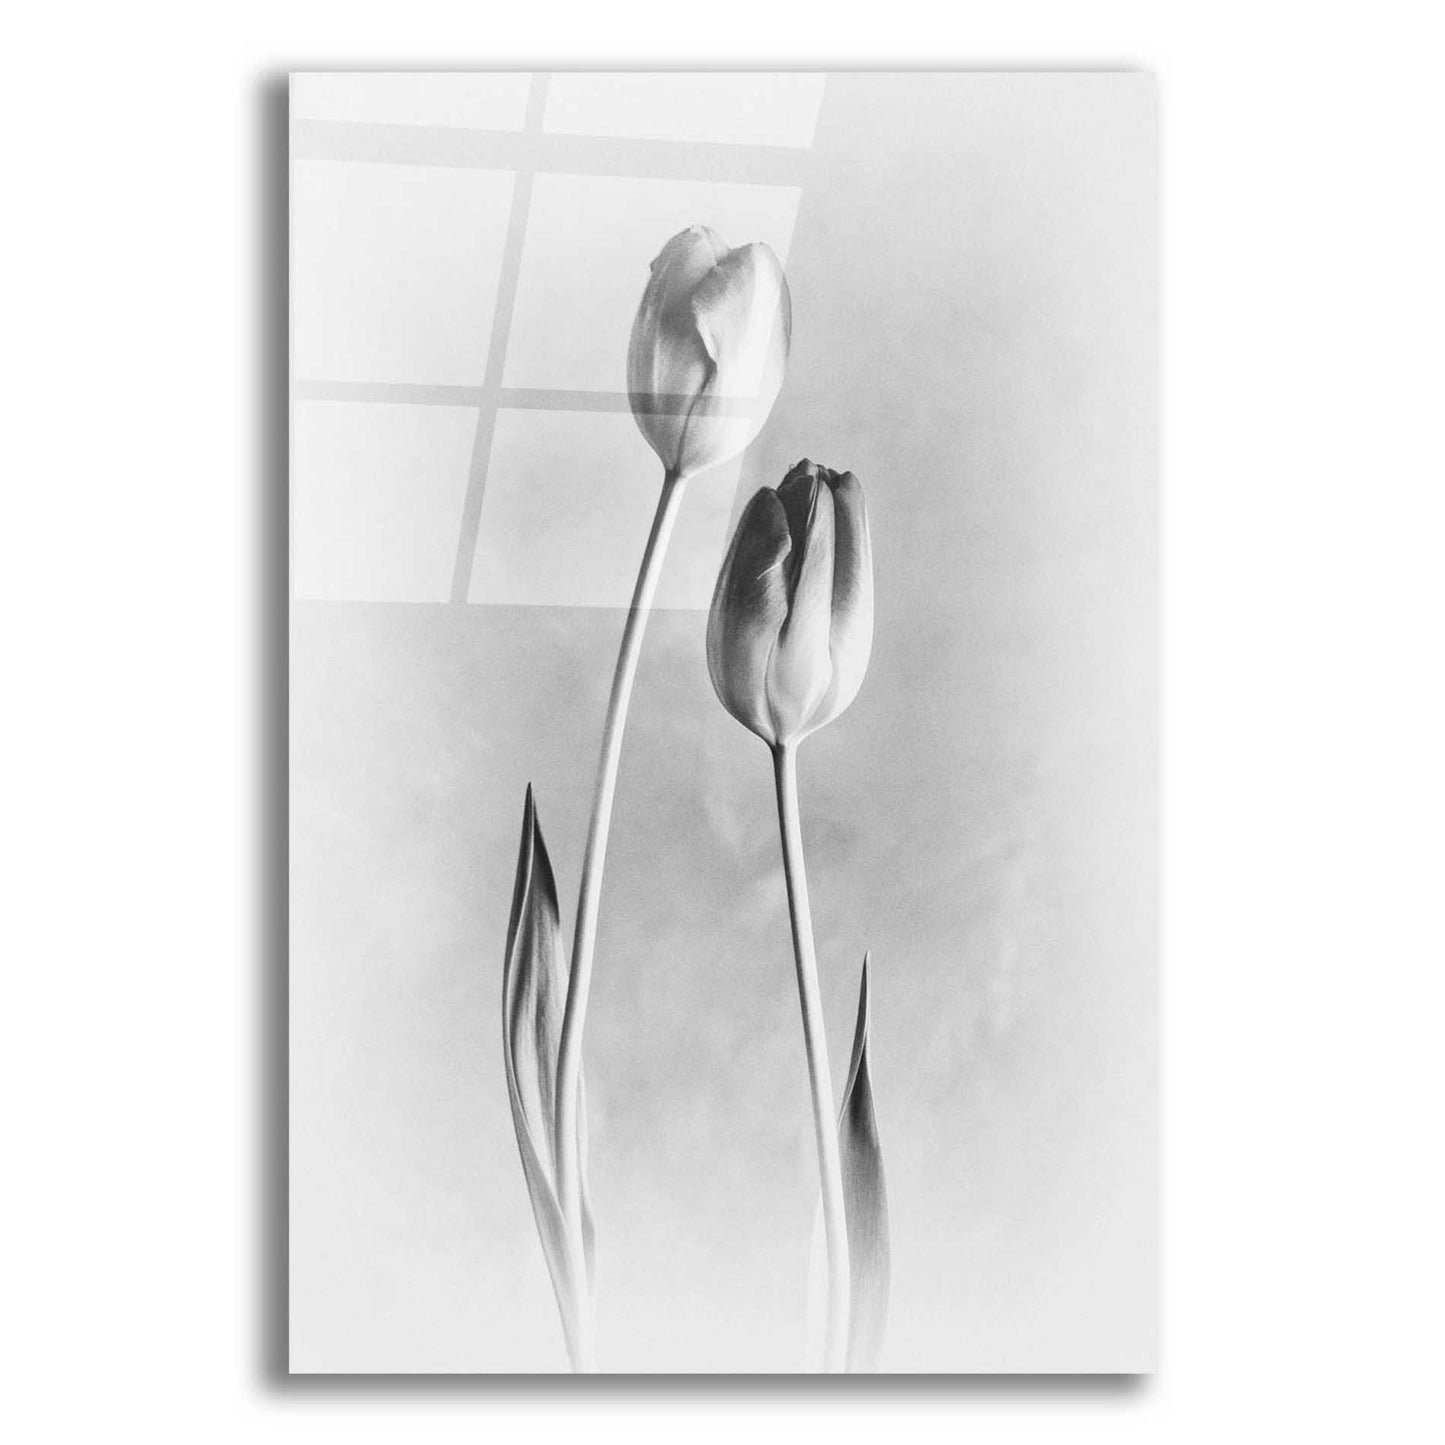 Epic Art 'Soft Tulips III' by Debra Van Swearingen, Acrylic Glass Wall Art,12x16x1.1x0,18x26x1.1x0,26x34x1.74x0,40x54x1.74x0